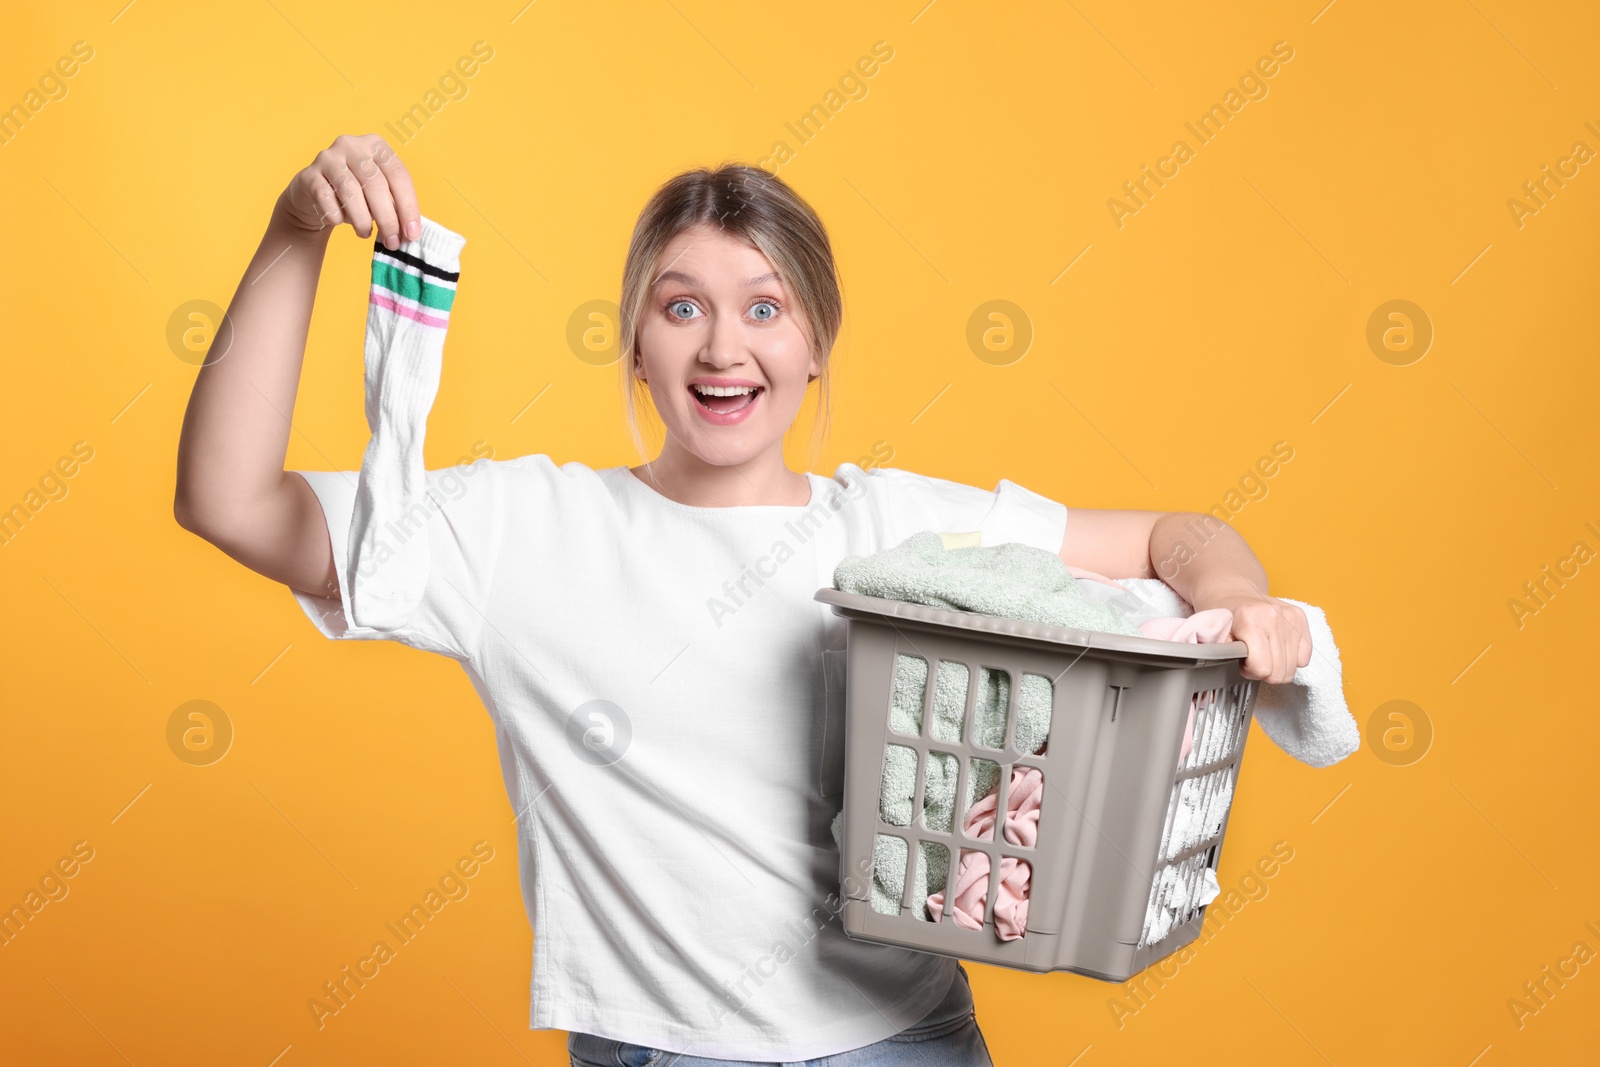 Photo of Emotional woman with basket full of laundry on orange background